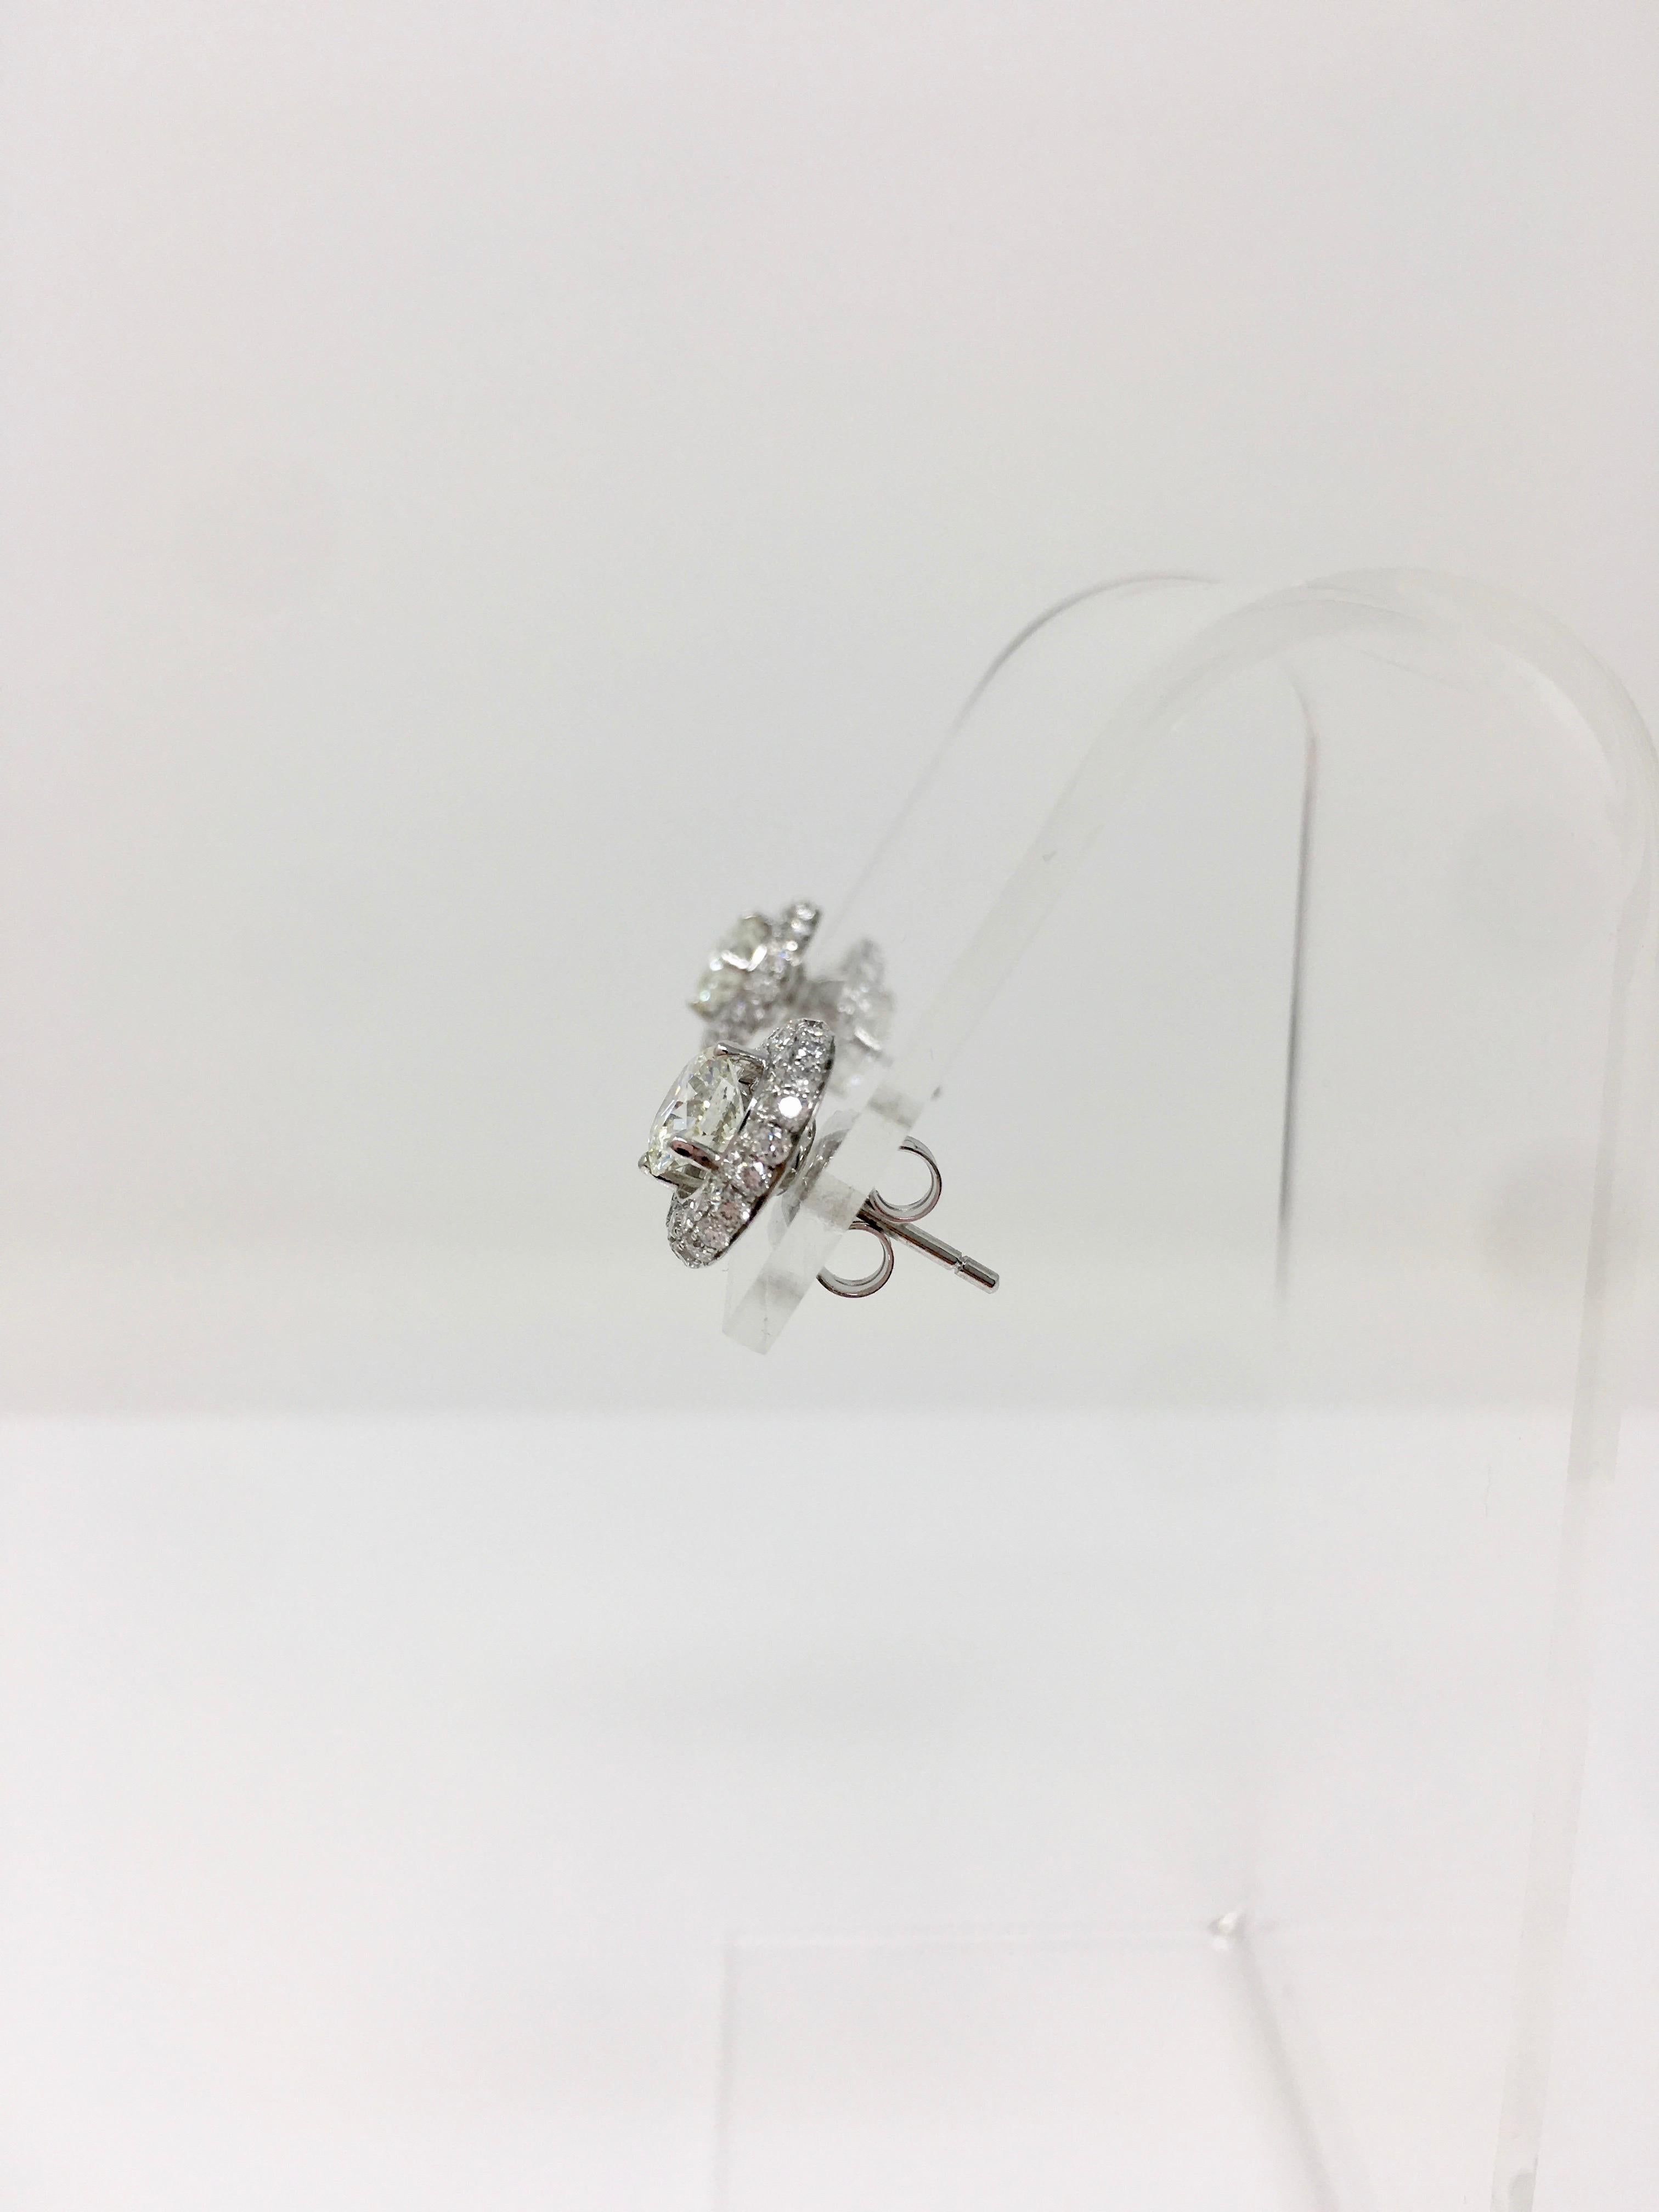 Klassische und elegante Diamant-Ohrstecker mit zwei weißen, runden Diamanten im Brillantschliff mit einem Gewicht von 1,00 Karat (Farbe J, SI1) und 1,01 Karat (Farbe J, SI1). Diese beiden Solitär-Diamanten sind wunderschön in einer handgefertigten